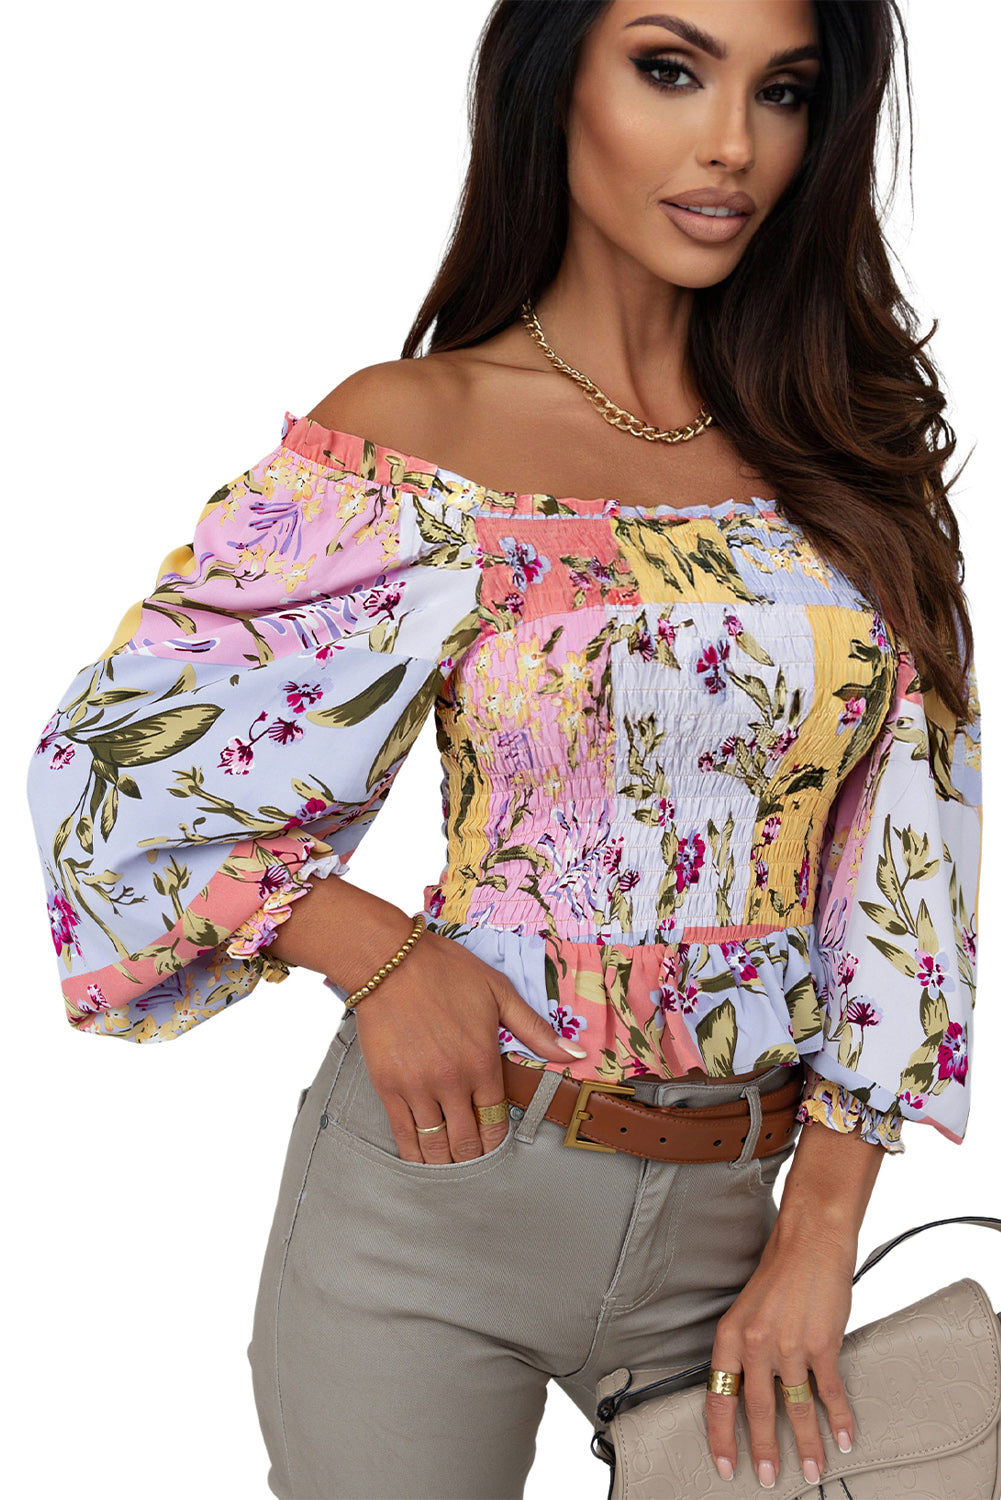 Mehrfarbige, gesmokte Bluse mit Blumenrüschenbesatz und quadratischem Ausschnitt